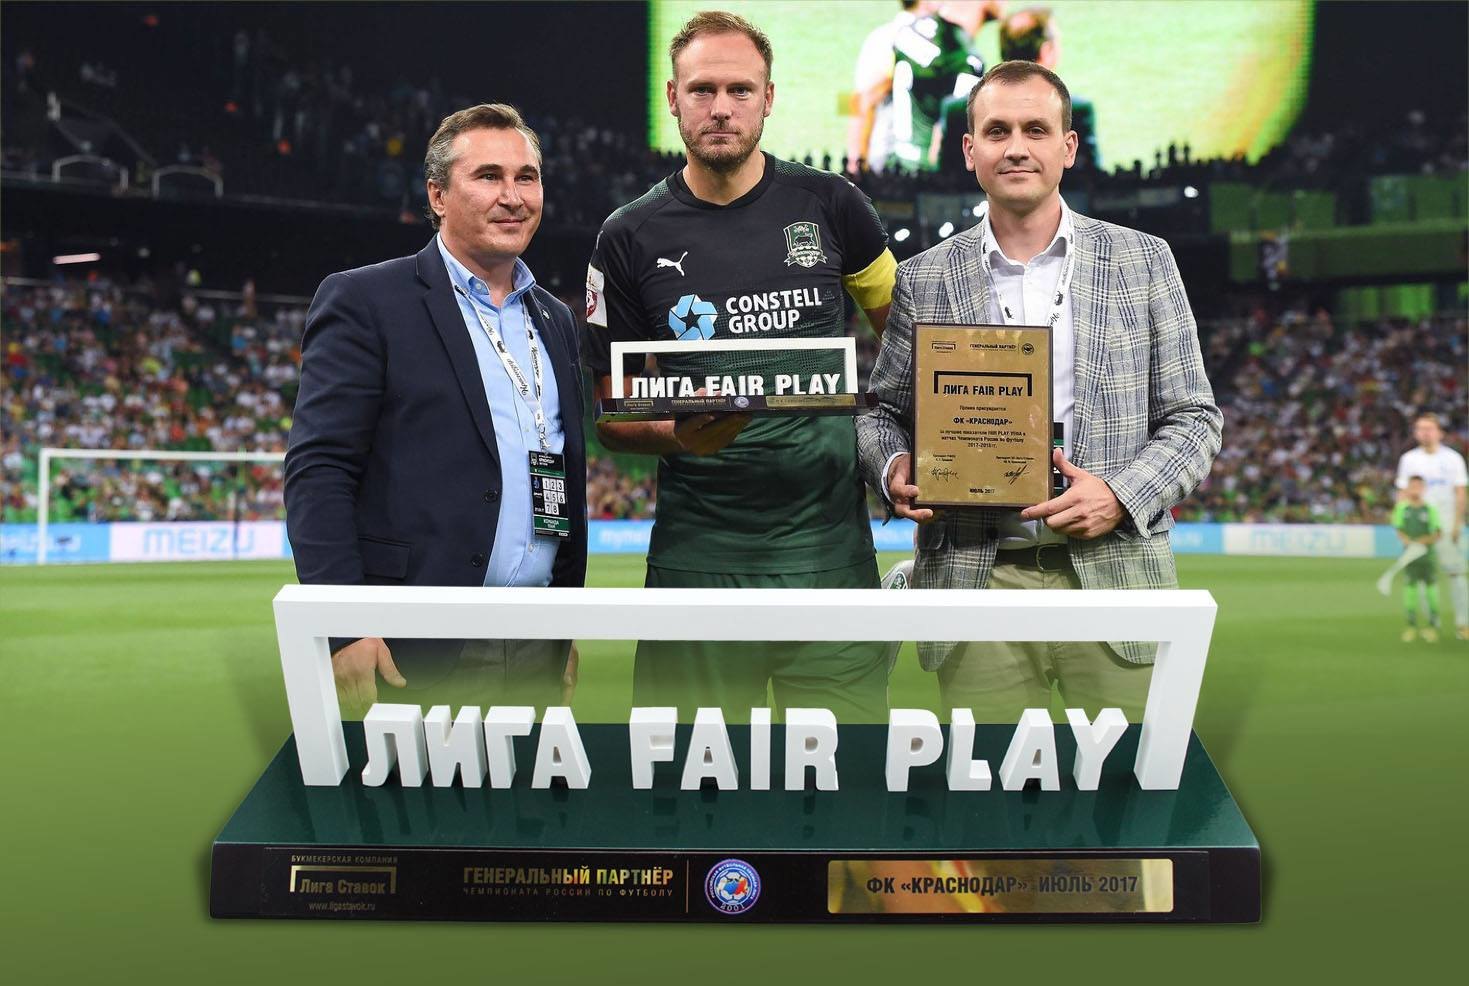 Основным принципом fair play является. Лига фейр плей. Приз Liga Fair Play. Fair Play футбол. Награда Фэйр-плей.